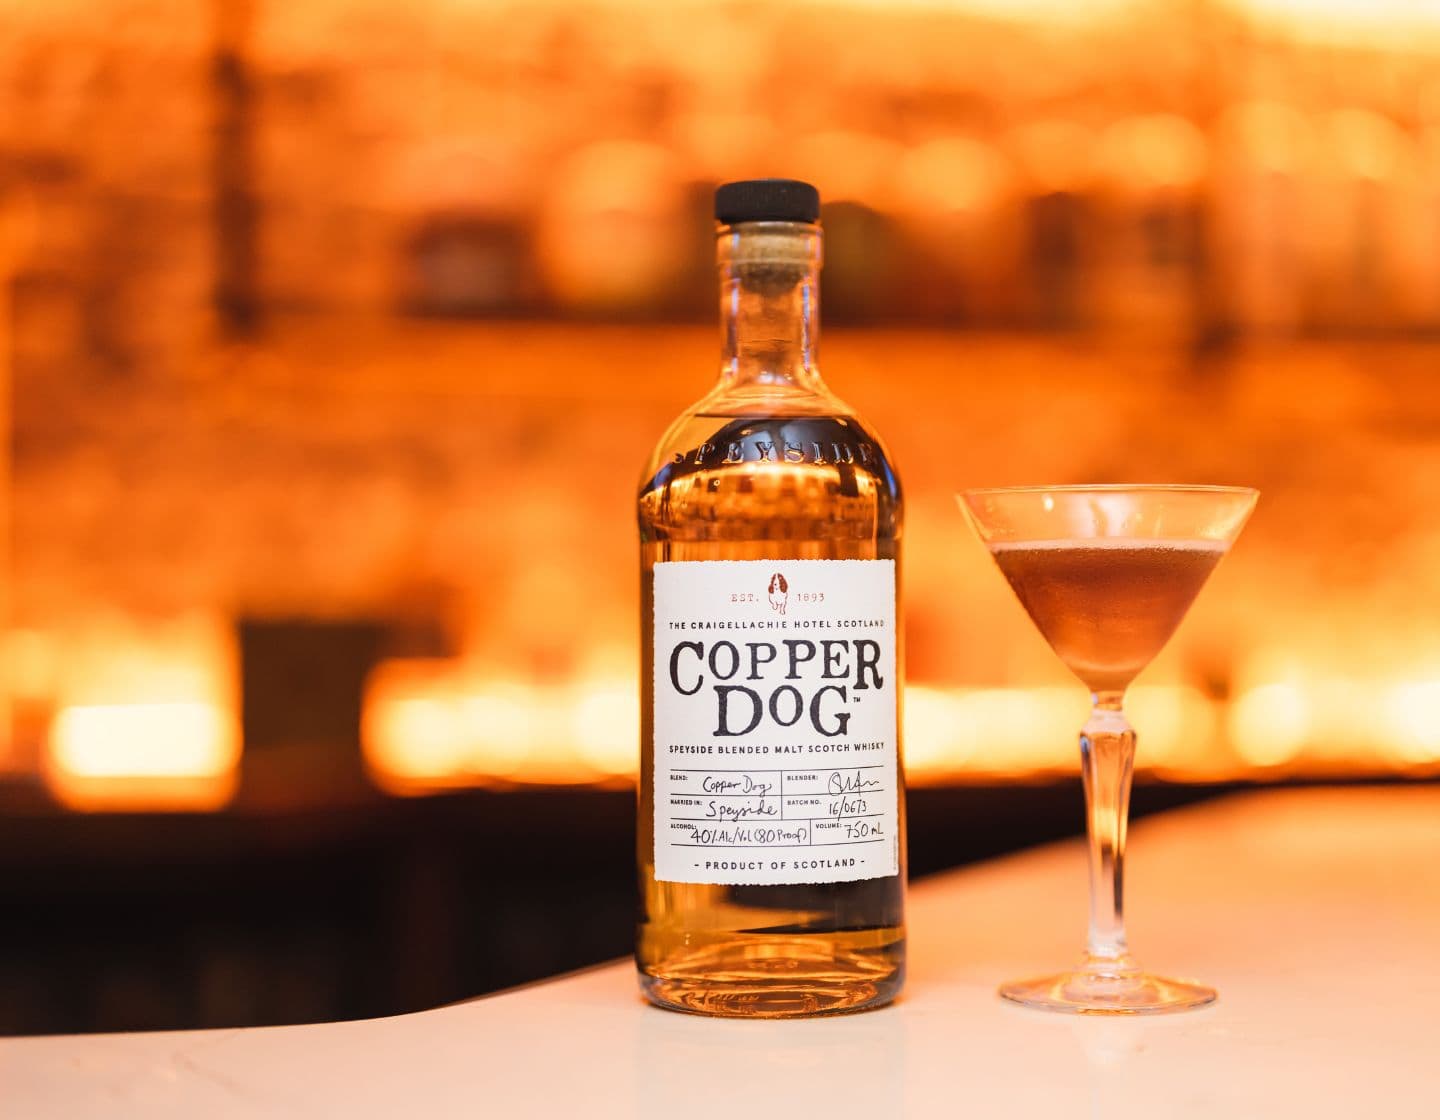 Botella de Copper Dog en el bar junto a un cóctel en una copa de martini.